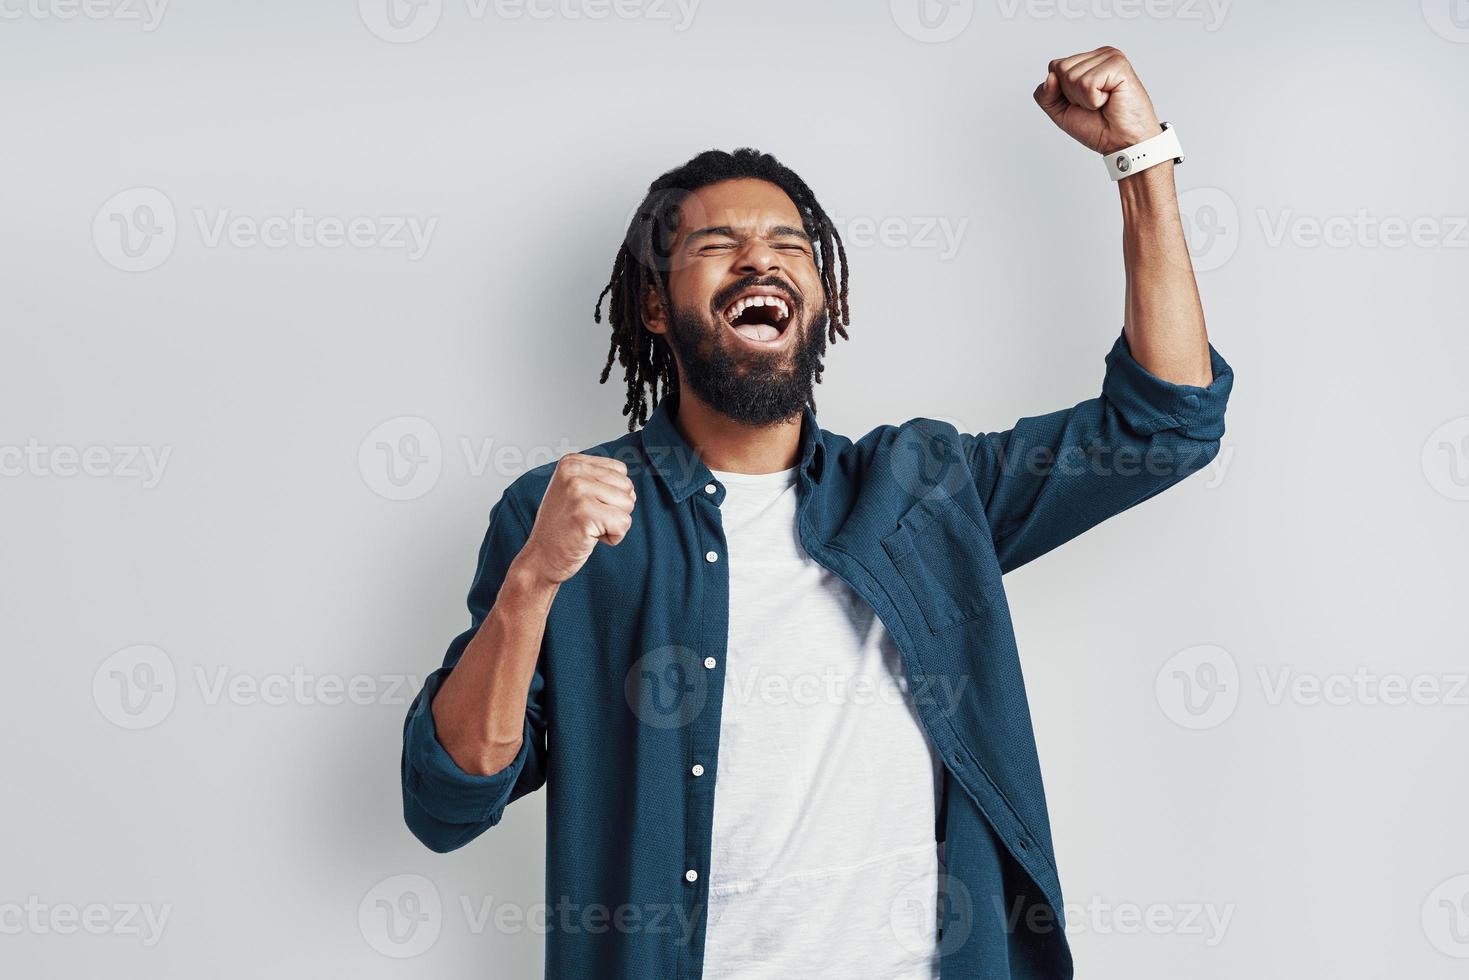 vrolijk jong Afrikaanse Mens in gewoontjes slijtage geschreeuw en gebaren terwijl staand tegen grijs achtergrond foto